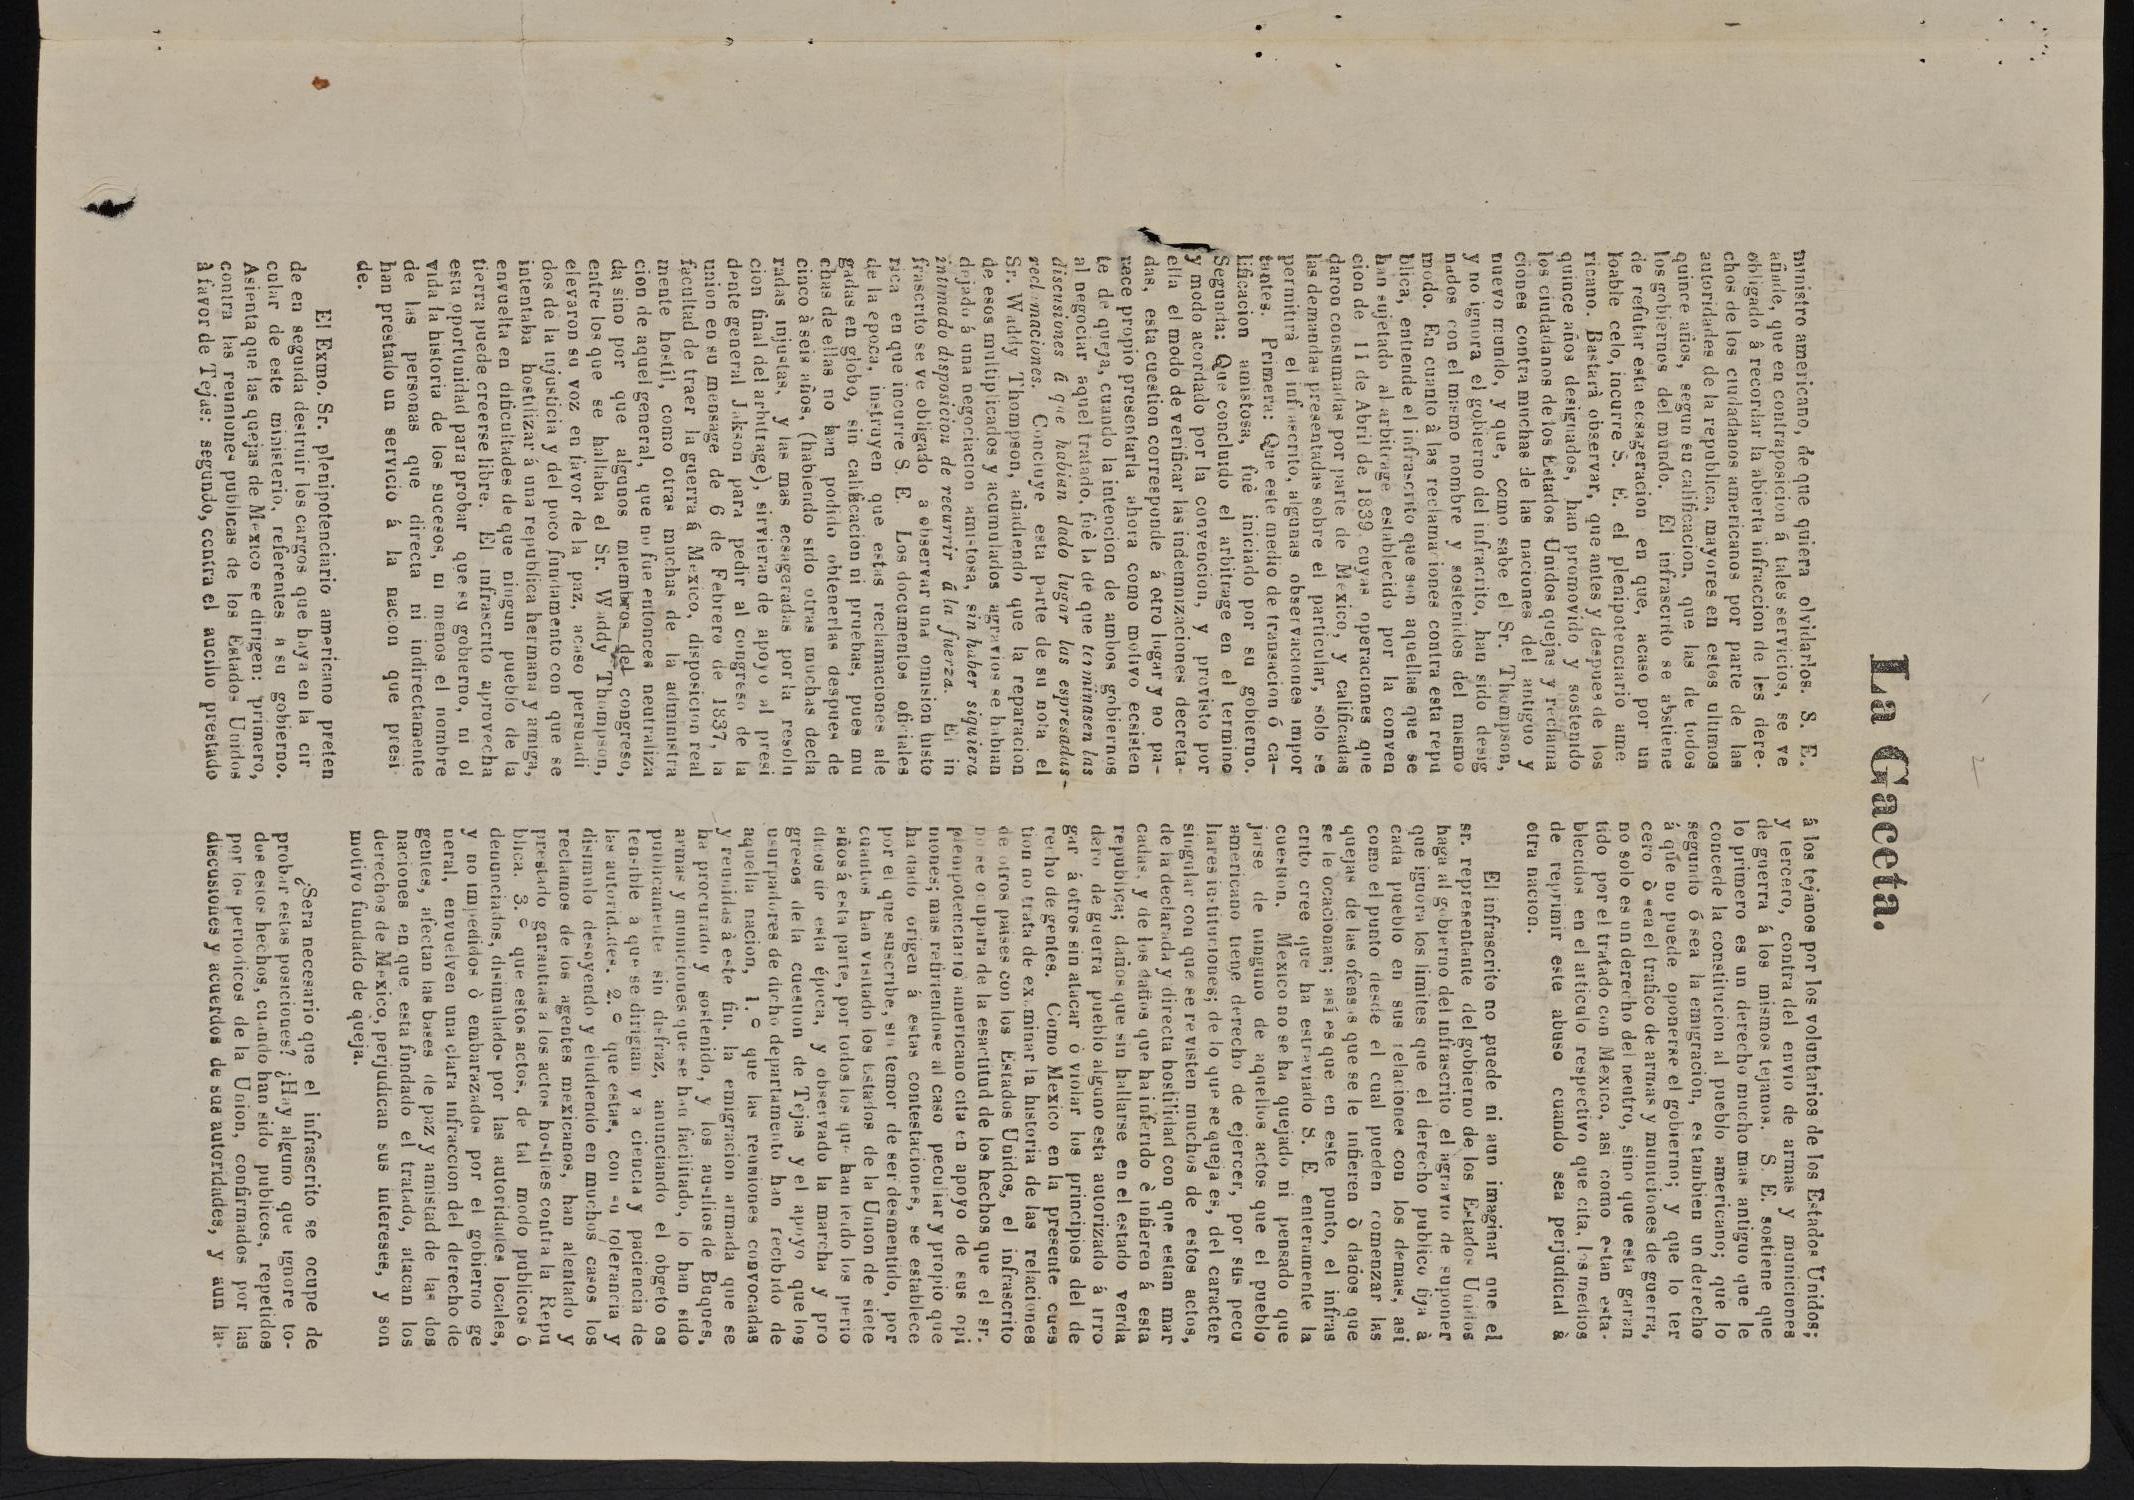 Gaceta del Gobierno de Tamaulipas, Tomo 3, Número 38, Septiembre 29 de 1842
                                                
                                                    [Sequence #]: 3 of 4
                                                